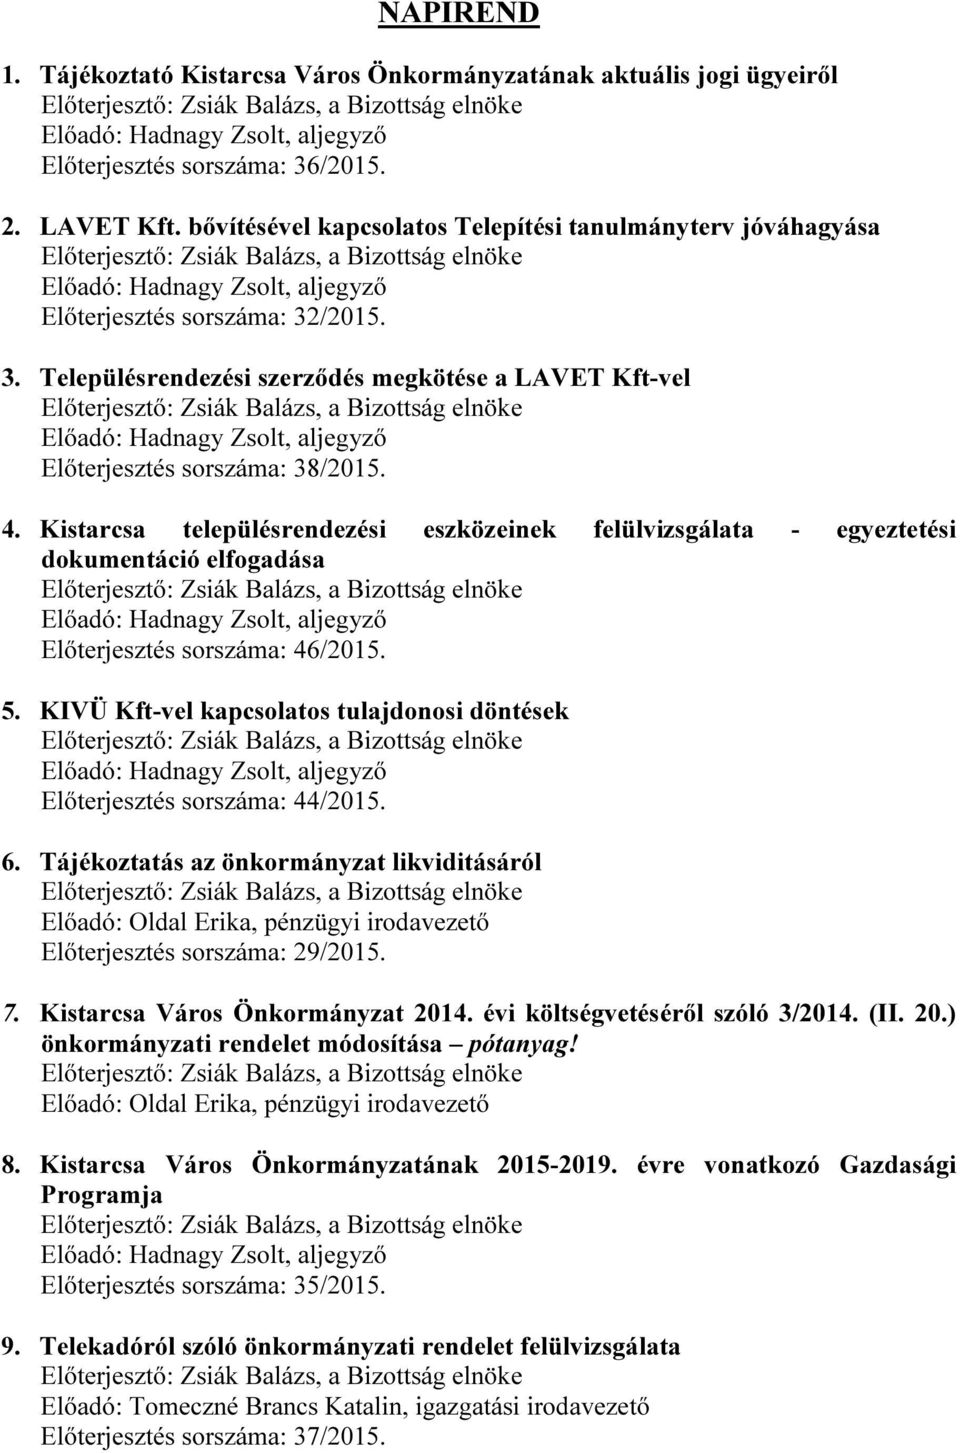 Kistarcsa településrendezési eszközeinek felülvizsgálata - egyeztetési dokumentáció elfogadása Előterjesztés sorszáma: 46/2015. 5.